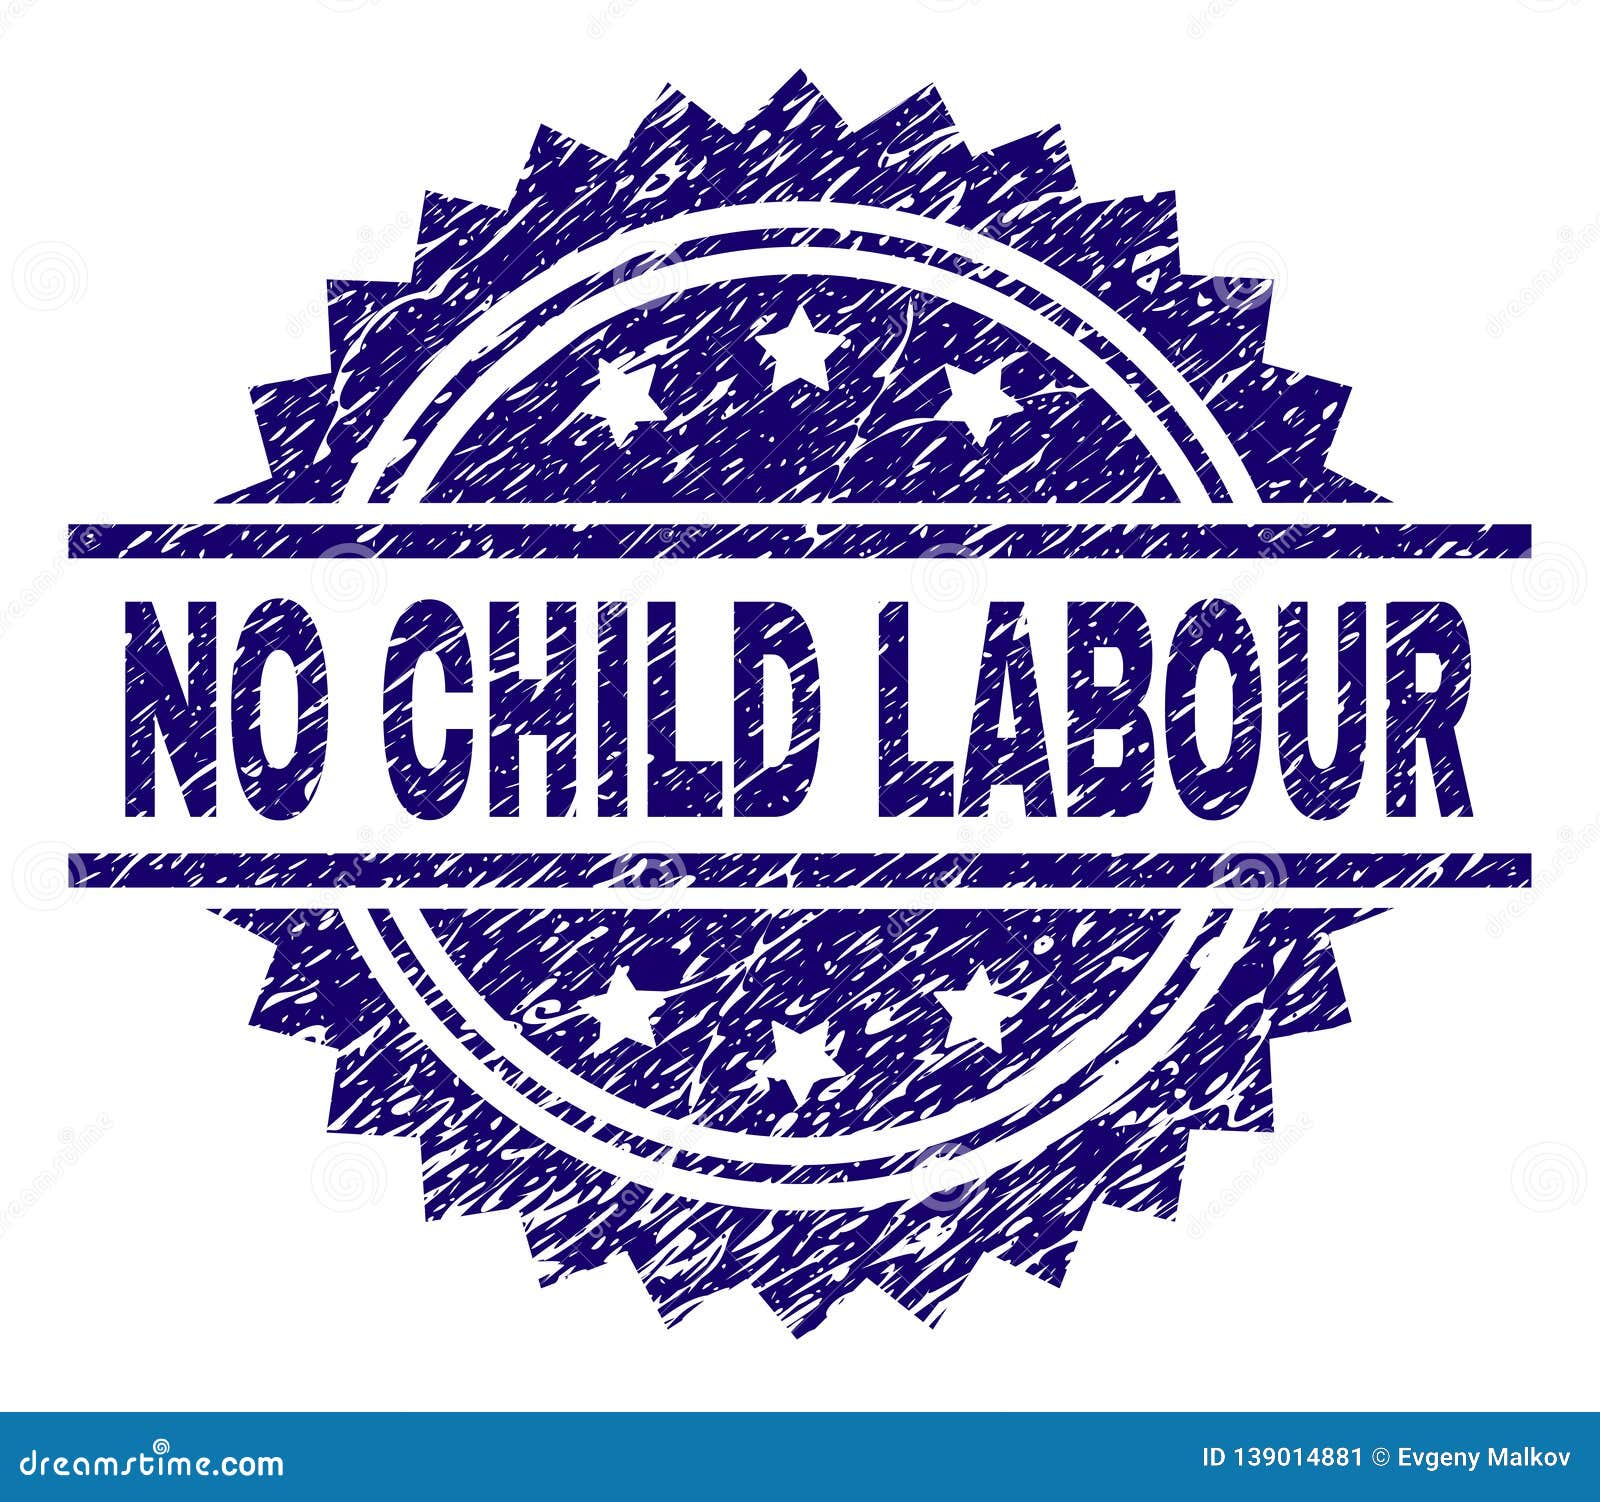 Speech on Child Labour